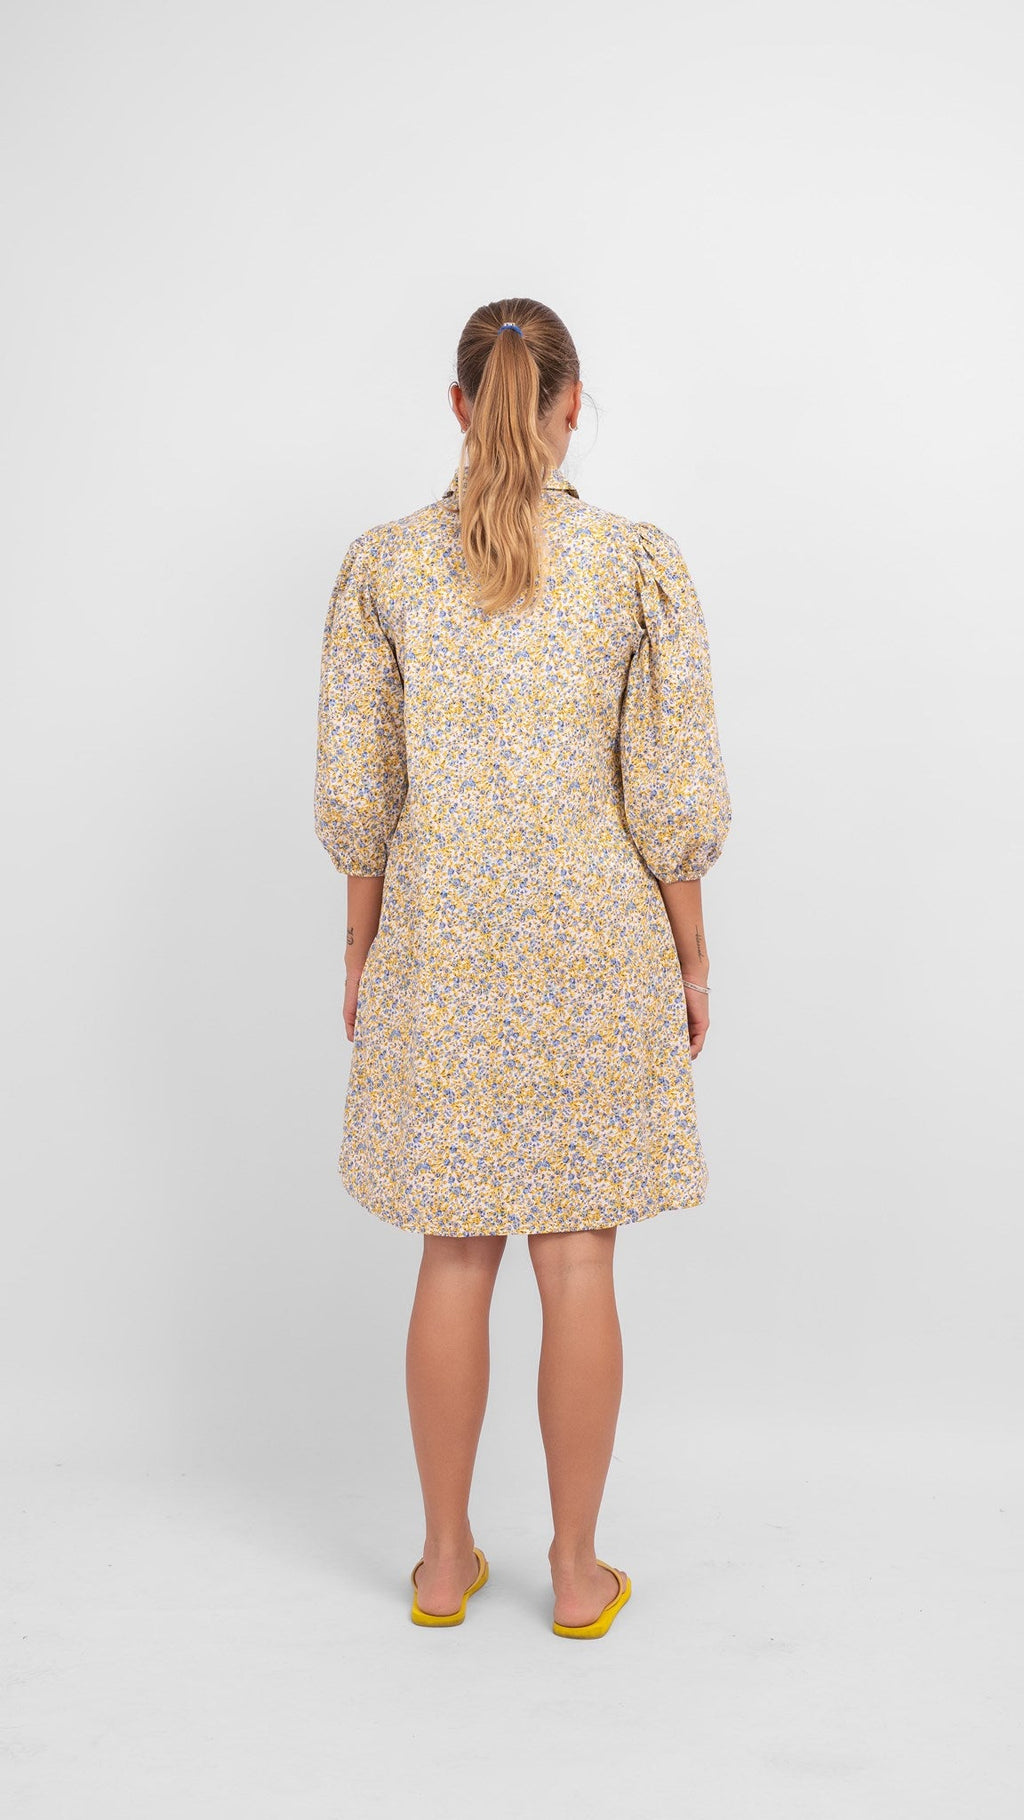 Φόρεμα πουκάμισο Sofie - μπλε και κίτρινο floral